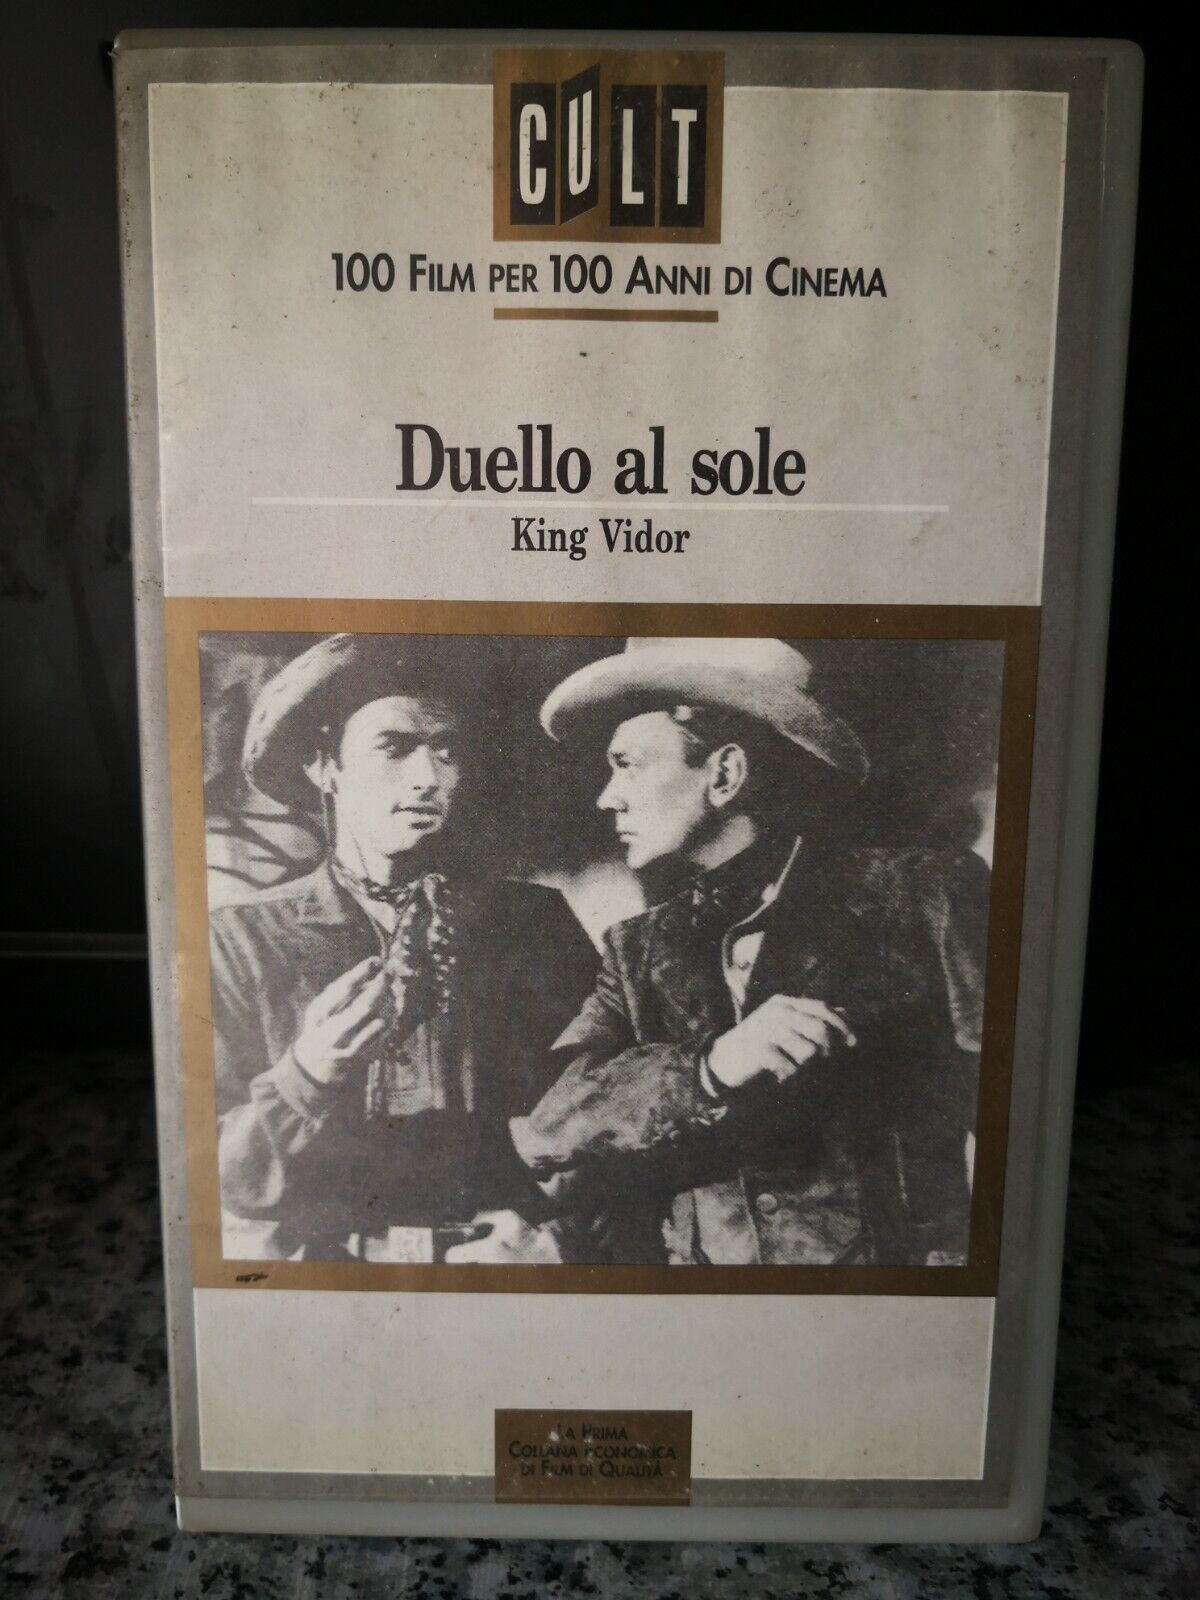 Duello al sole - 100 film per 100 anni di cinema  - vhs -1946 - Cult -F